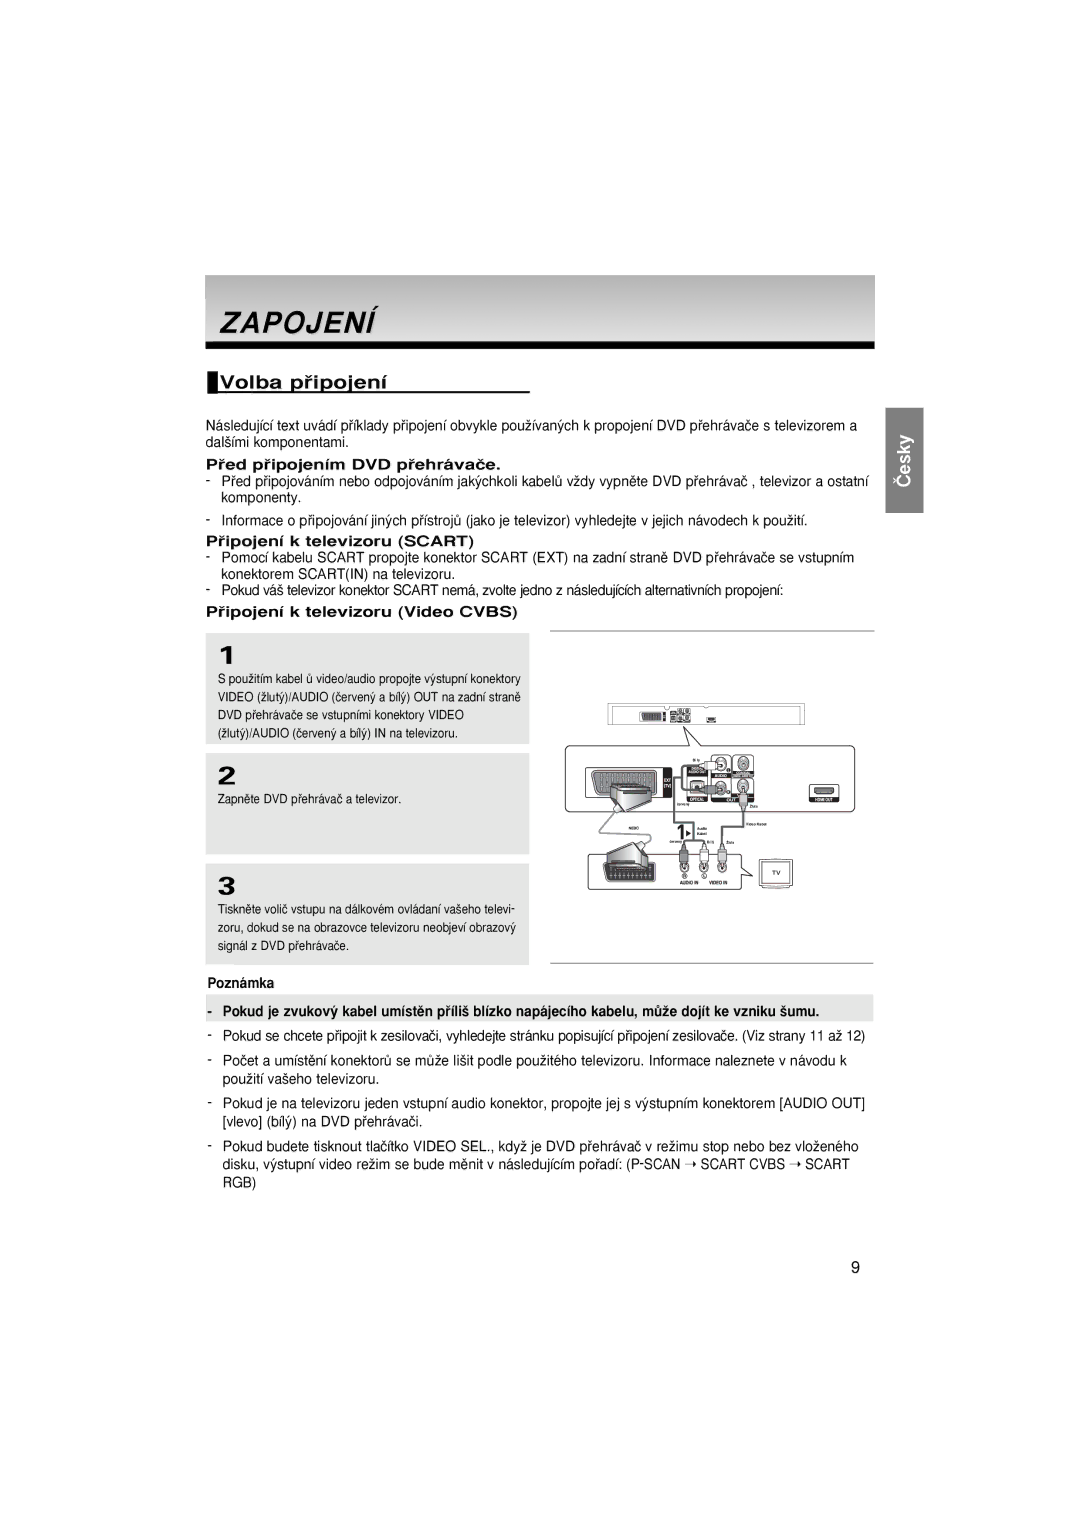 Samsung DVD-1080P8/EDC manual Zapojení, Volba pﬁipojení, Pﬁed pﬁipojením DVD pﬁehrávaãe, Pﬁipojení k televizoru Scart 